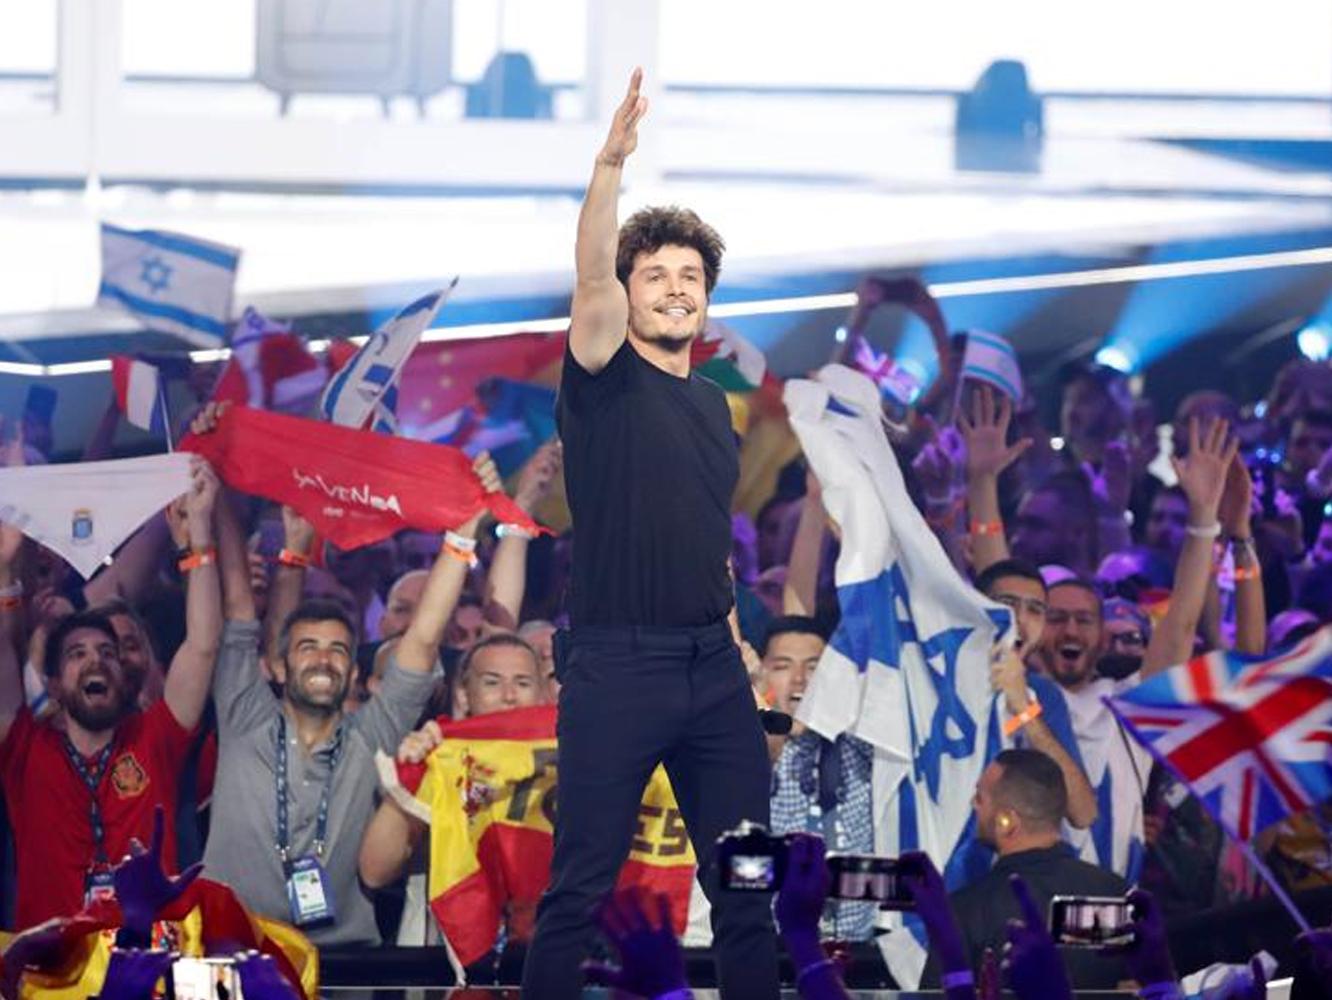 Eurovisión 2019: Países Bajos gana con Duncan Laurence, España queda en el puesto 22 1